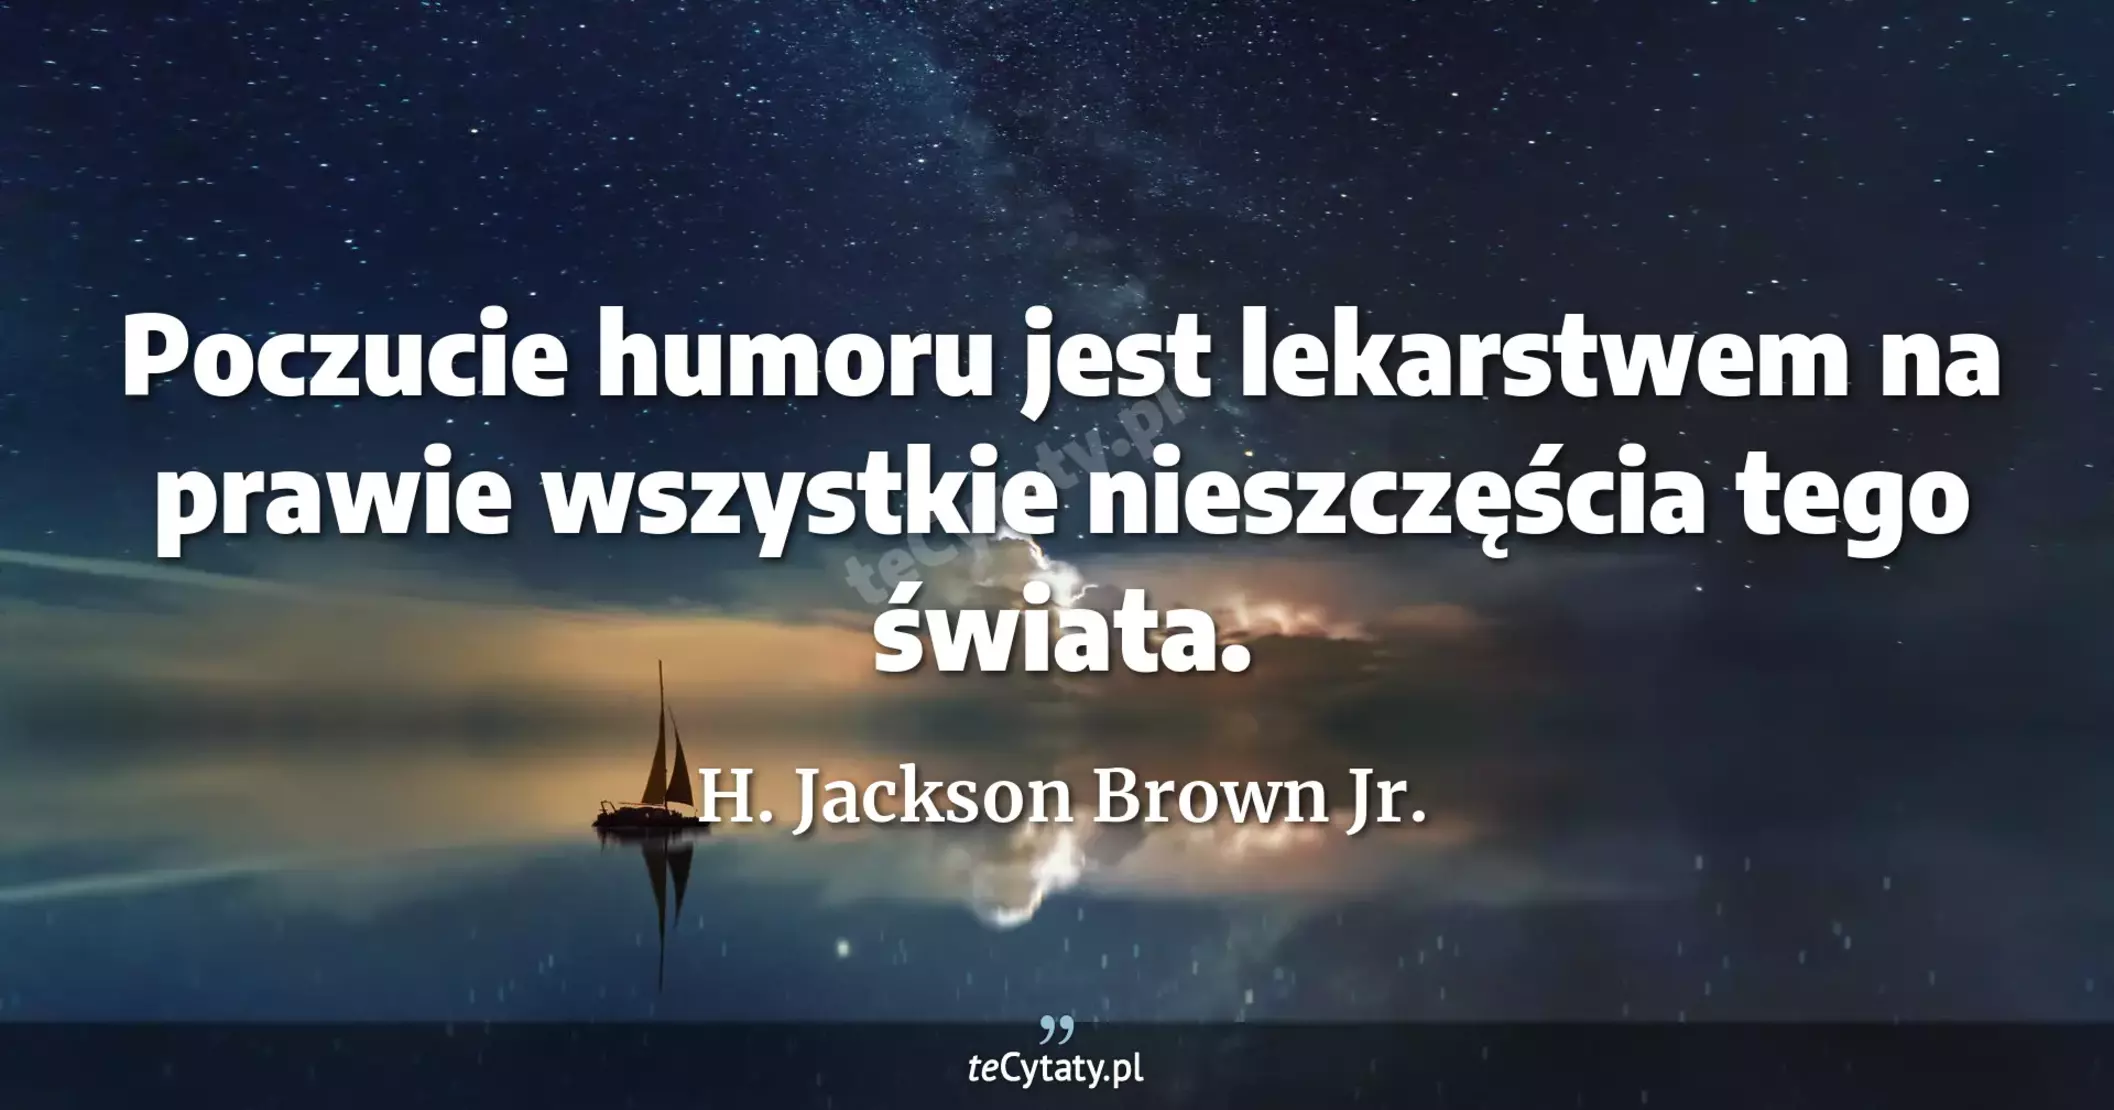 Poczucie humoru jest lekarstwem na prawie wszystkie nieszczęścia tego świata. - H. Jackson Brown Jr.